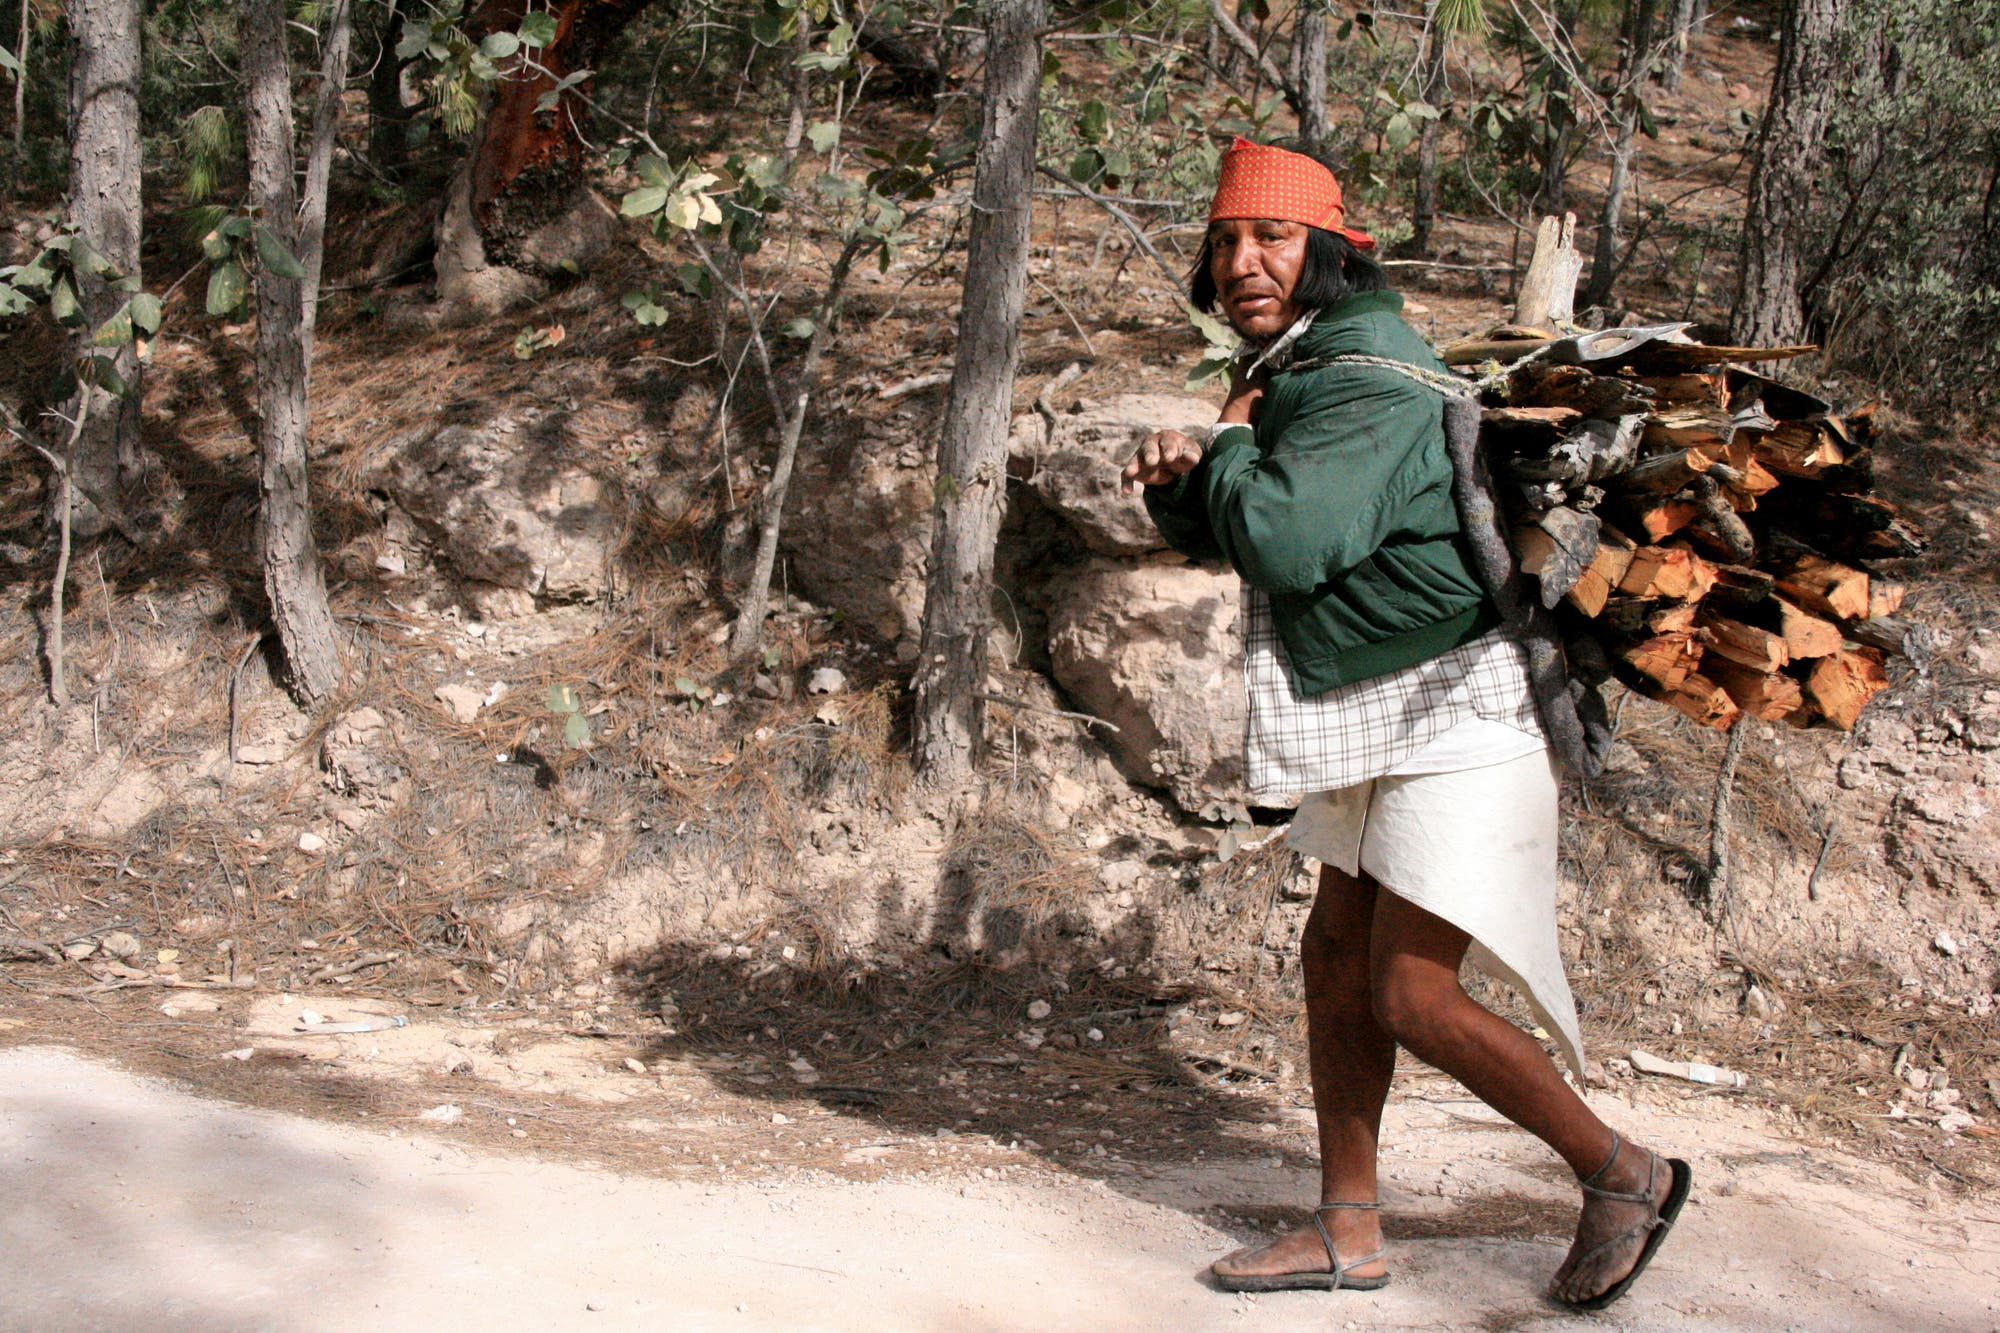 Ein älterer Mann aus dem Tarahumara-Stamm in den Bergen der Sierra Madre im mexikanischen Bundesstaat Chihuahua trägt ein Bündel Feuerholz auf seinem Rücken einen Pfad hinauf. Tarahumara werden auch Rarámuri genannt, was so viel heißt wie: »Läufer« oder »jene, die schnell laufen«.